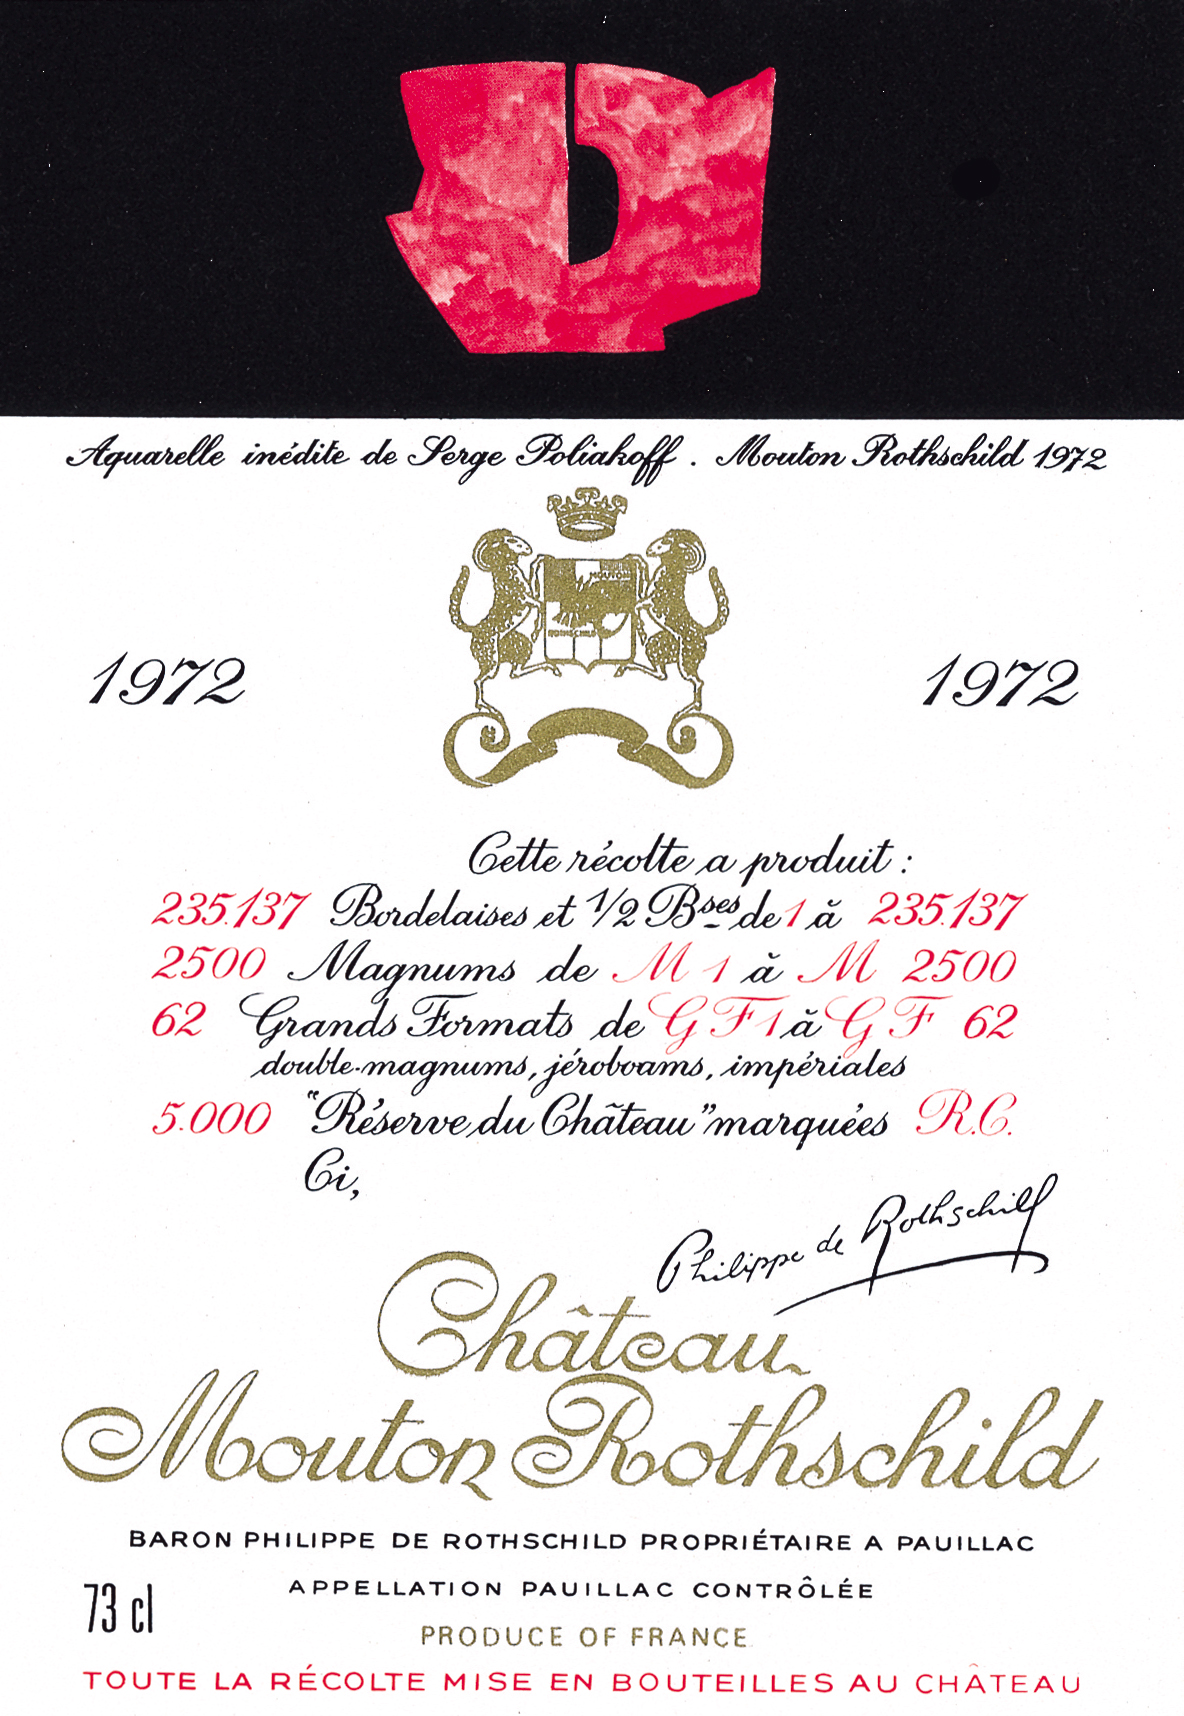 Etiquette Mouton Rothschild 1972